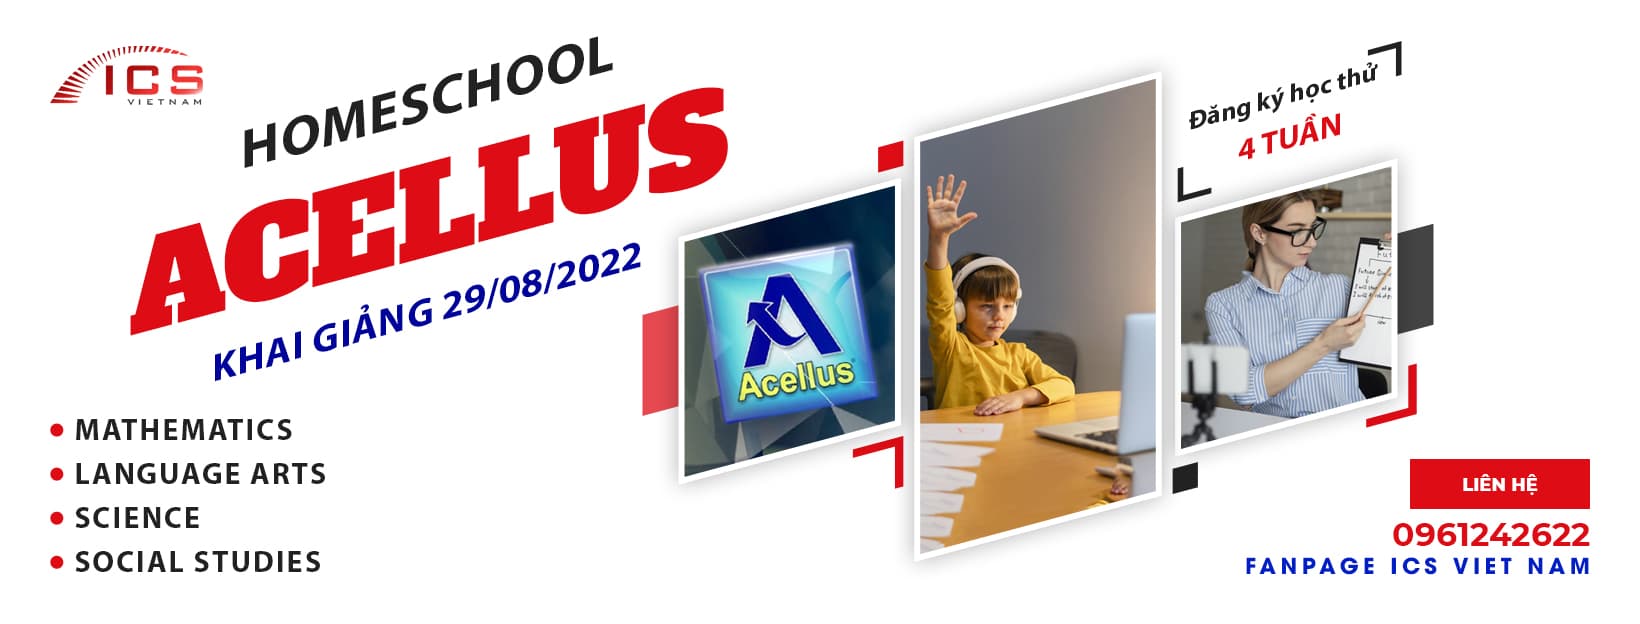 Khai giảng lớp homeschool Acellus ngày 29-08-2022